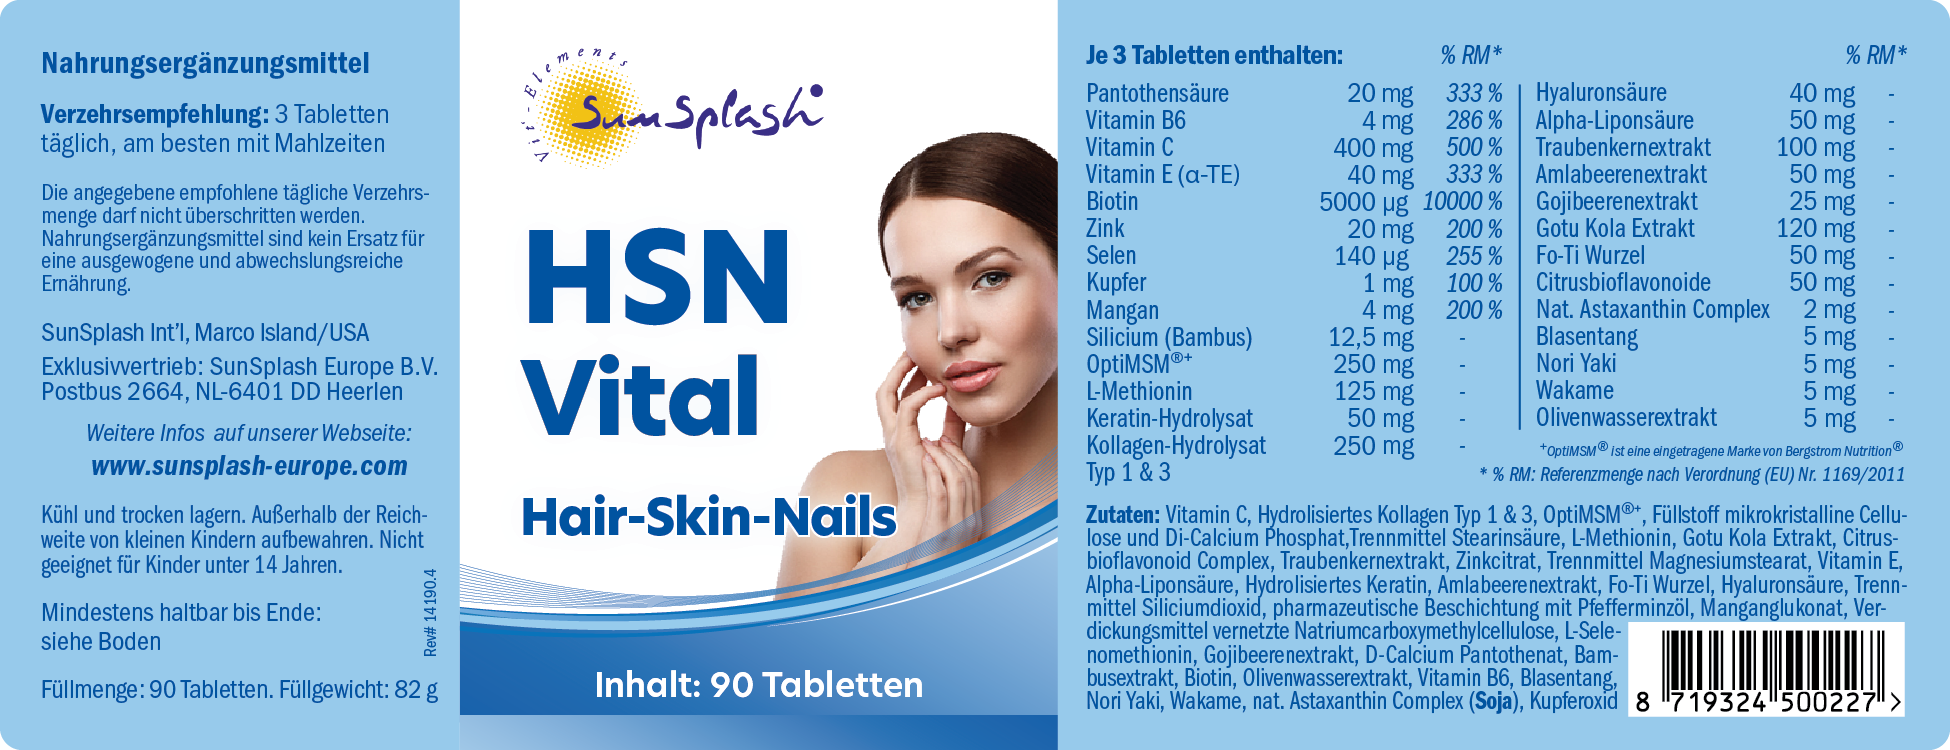 HSN Vital Hair-Skin-Nails (90 tabl.)